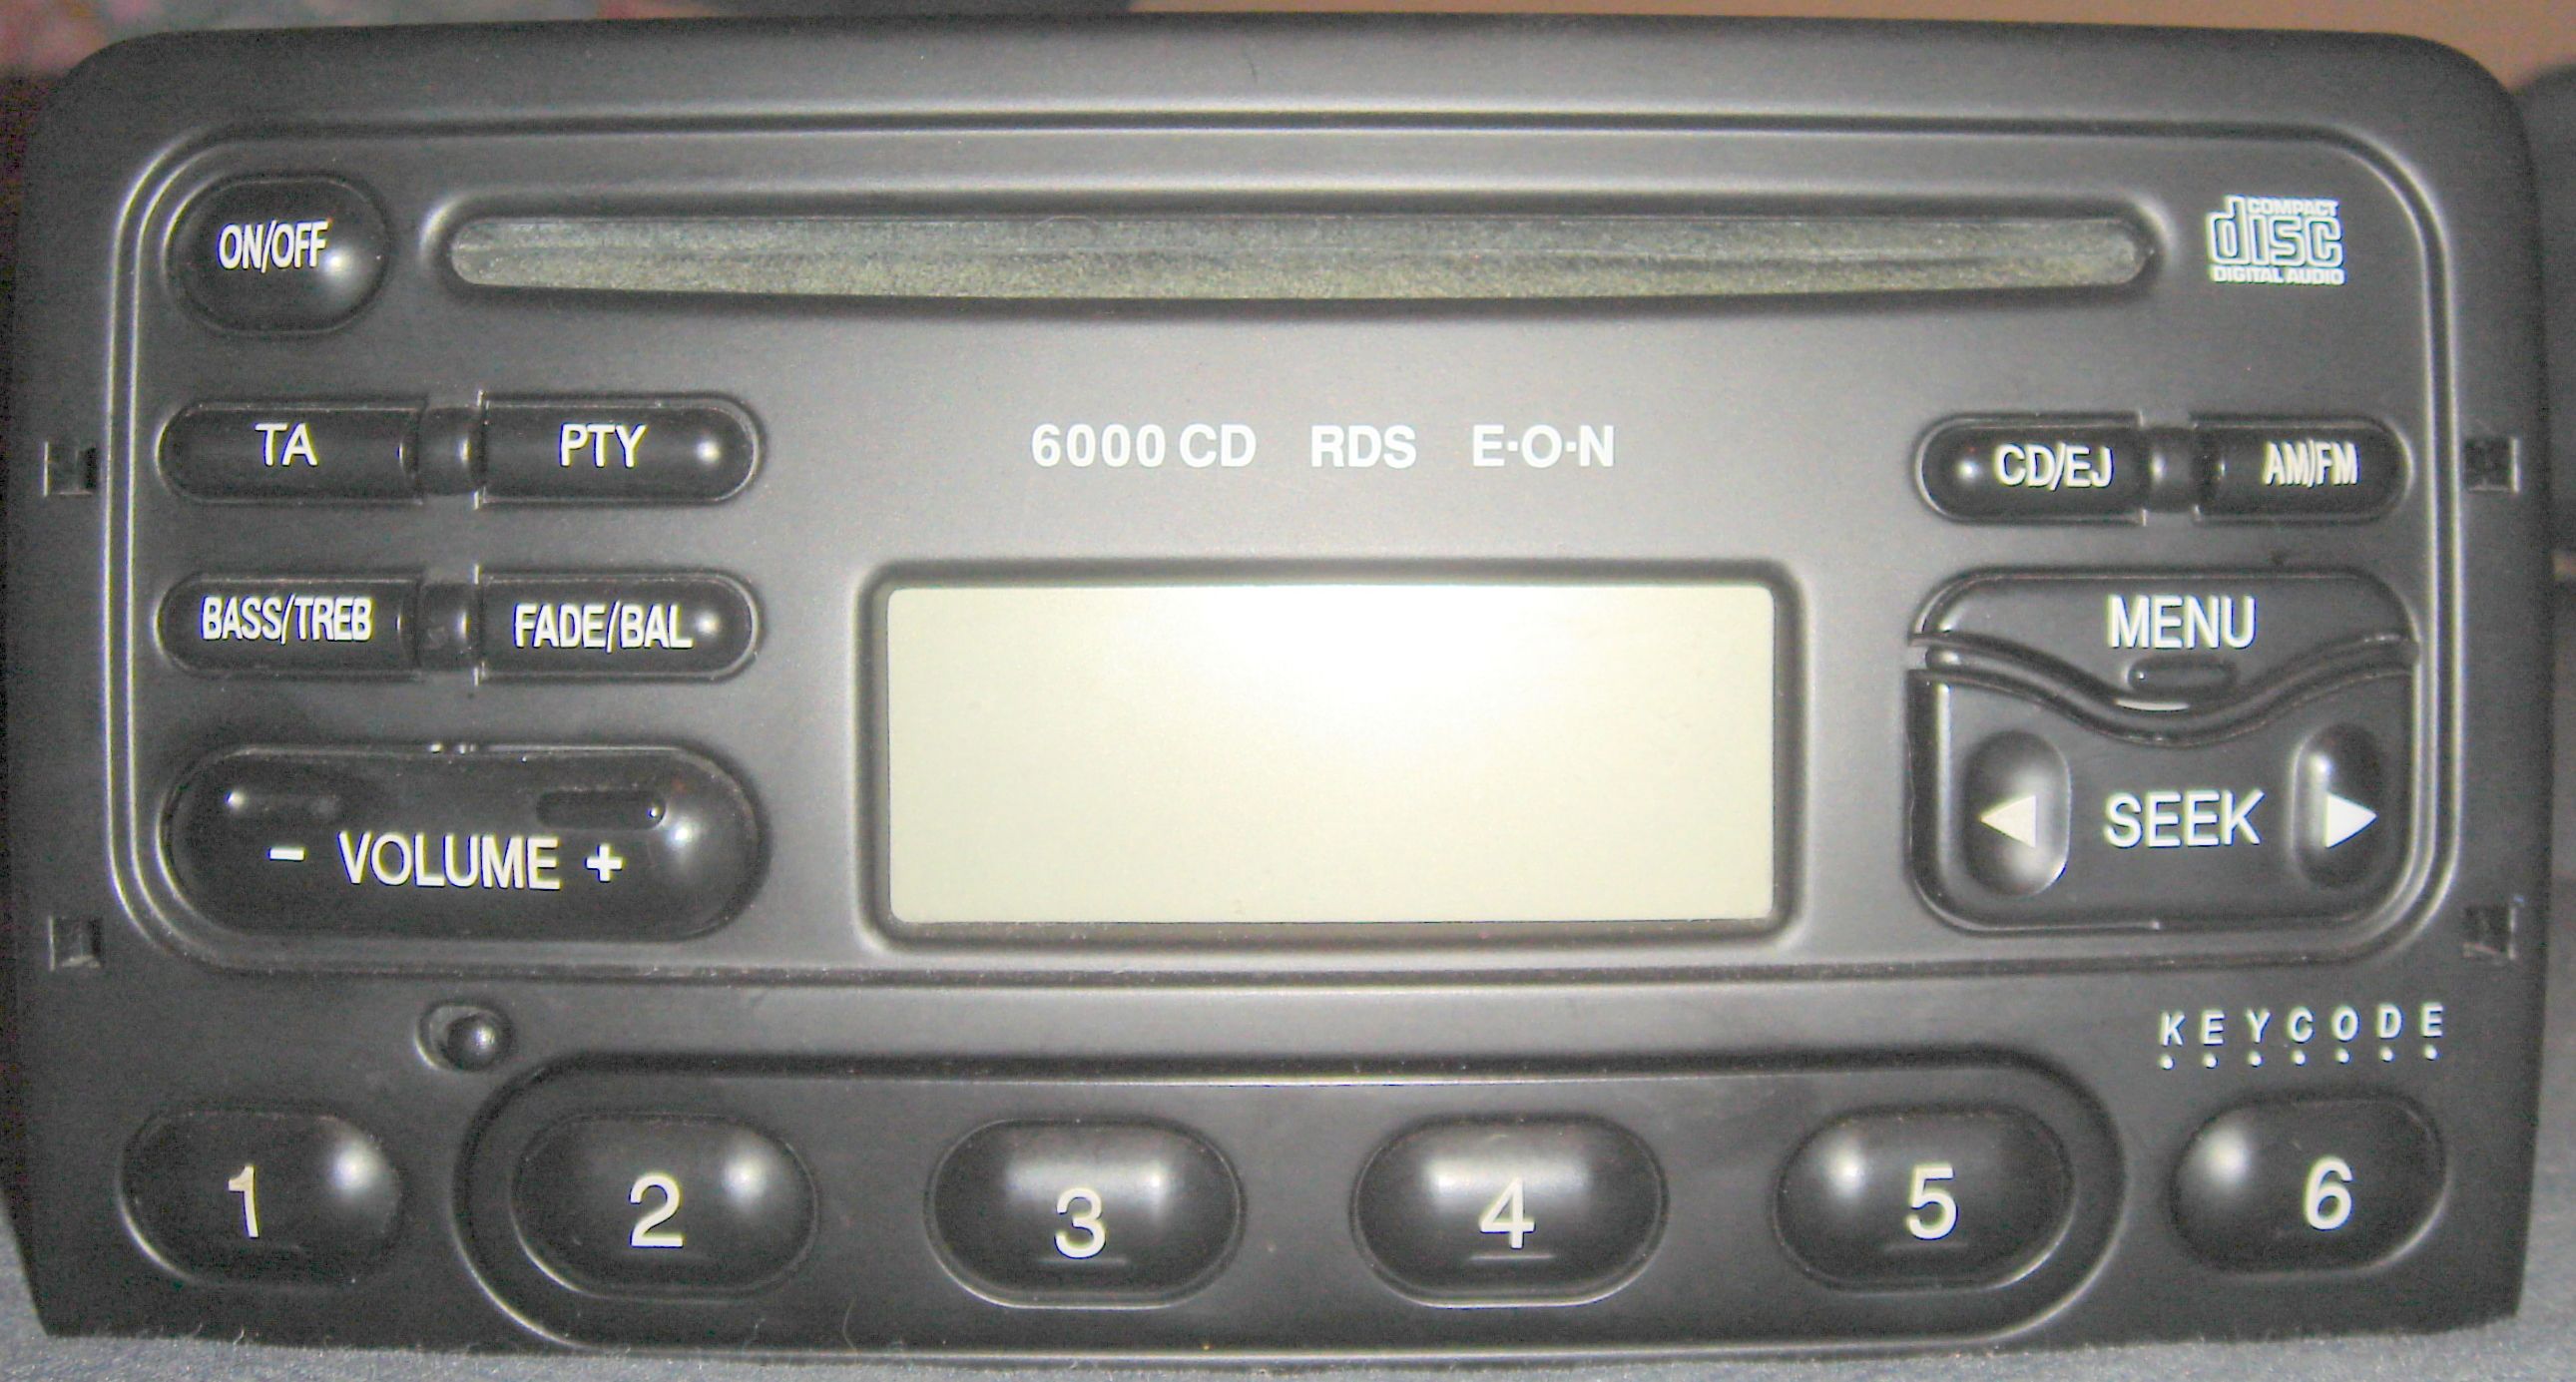 2002 Ford focus radio security code #1